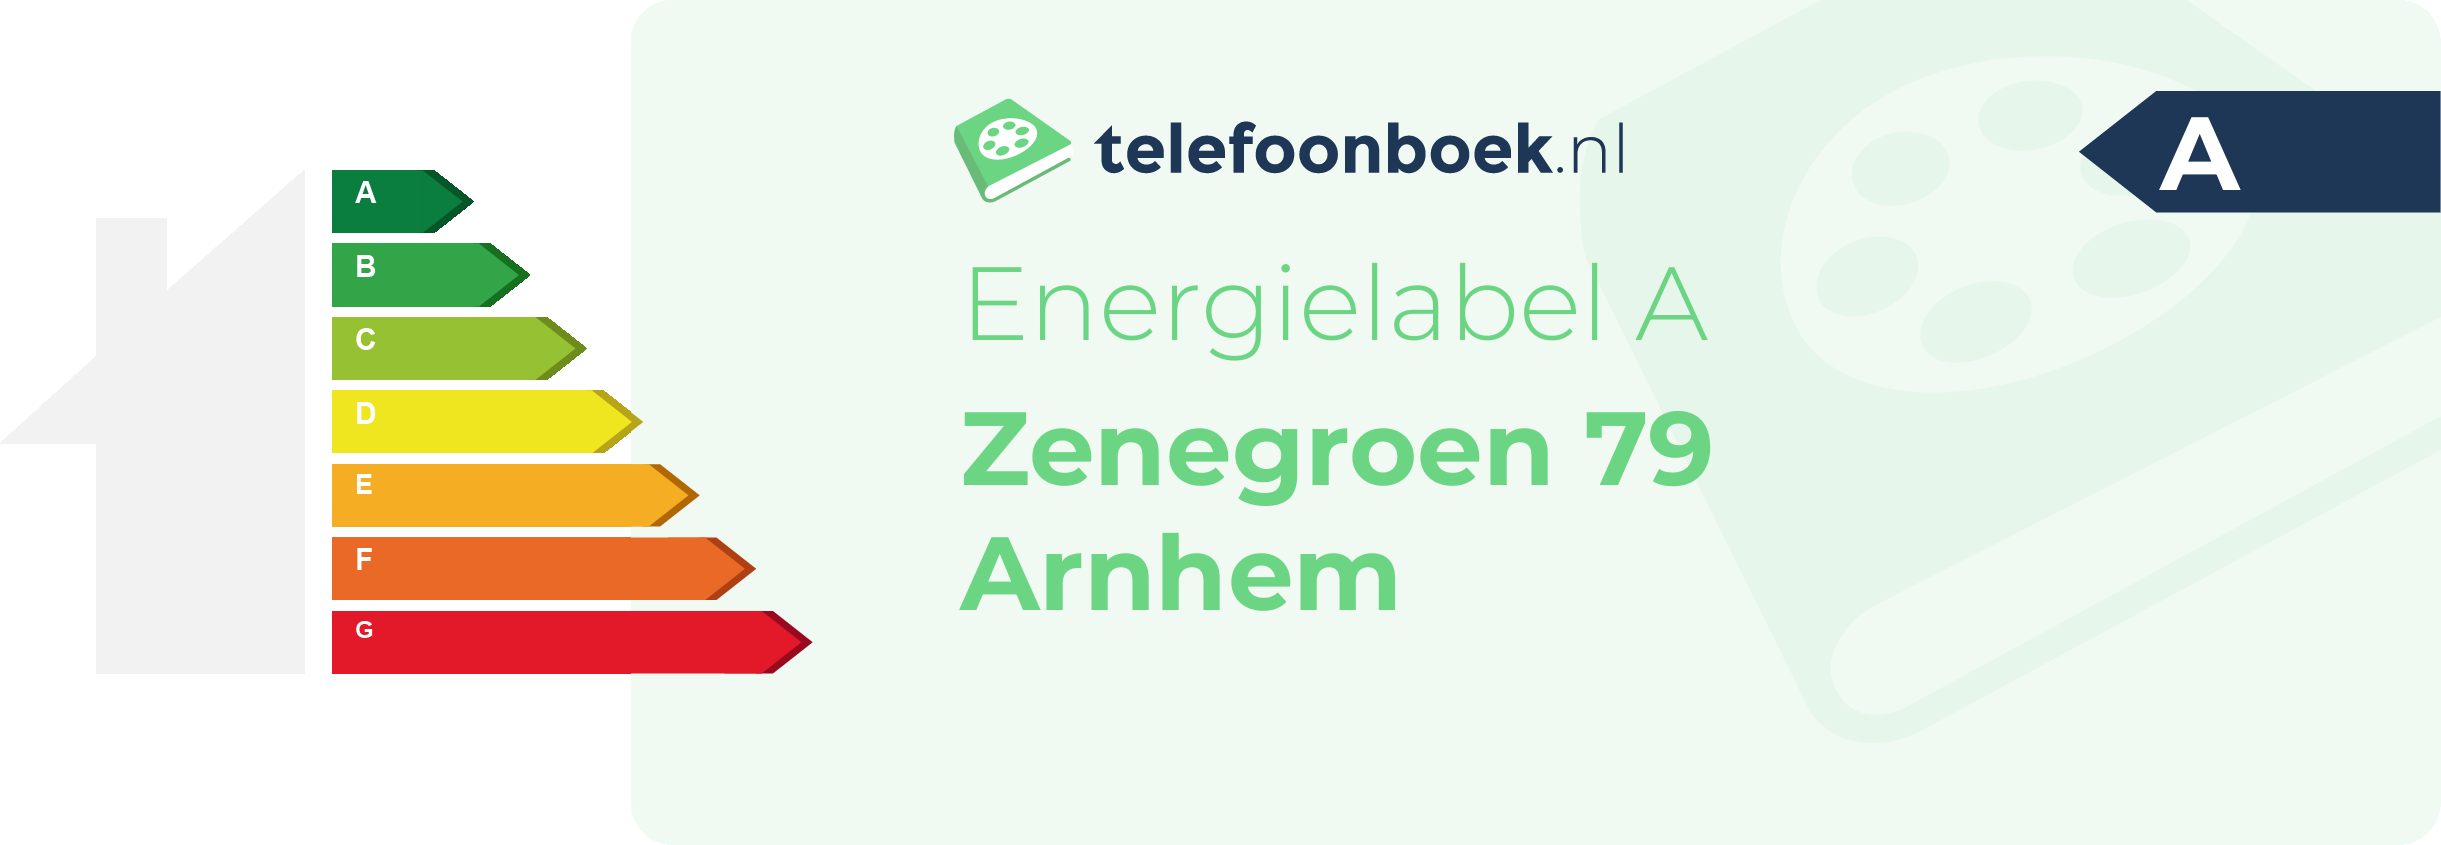 Energielabel Zenegroen 79 Arnhem